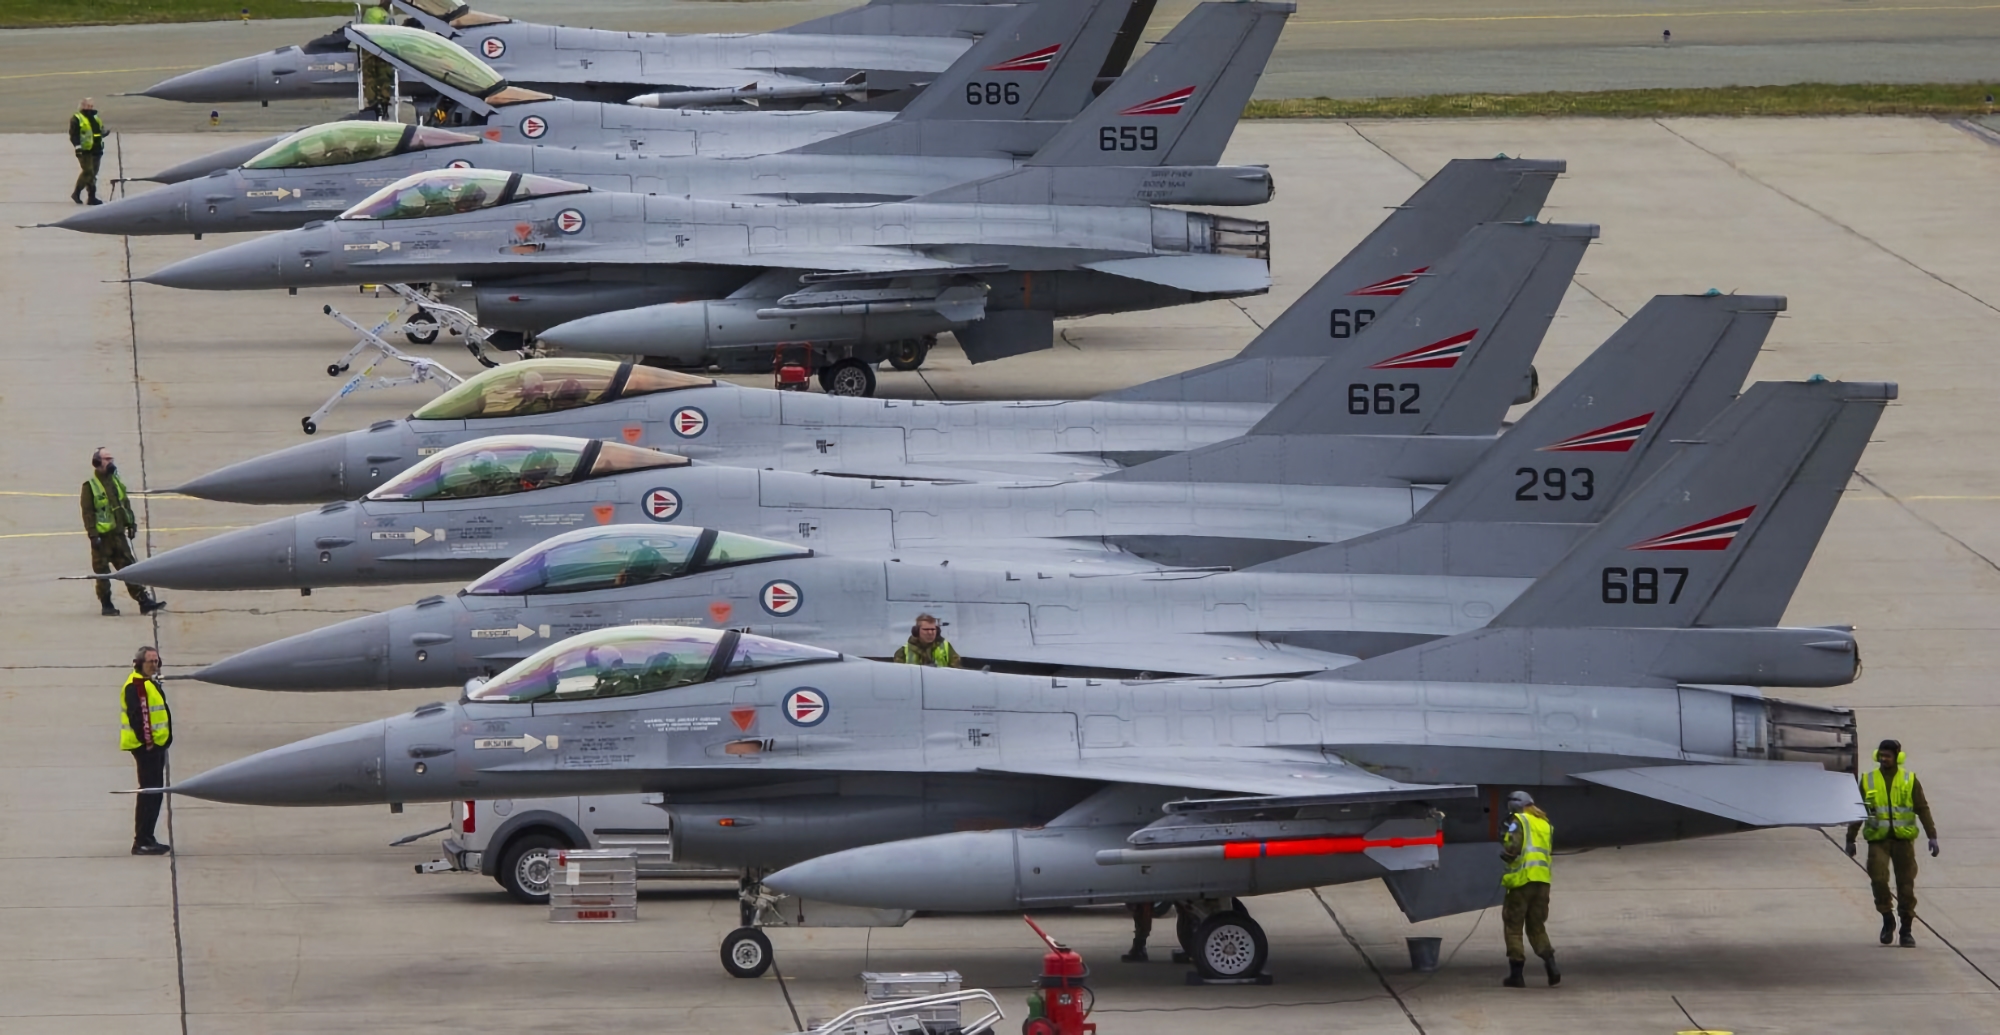 Україна може отримати нідерландські винищувачі F-16 Fighting Falcon через шість-вісім місяців